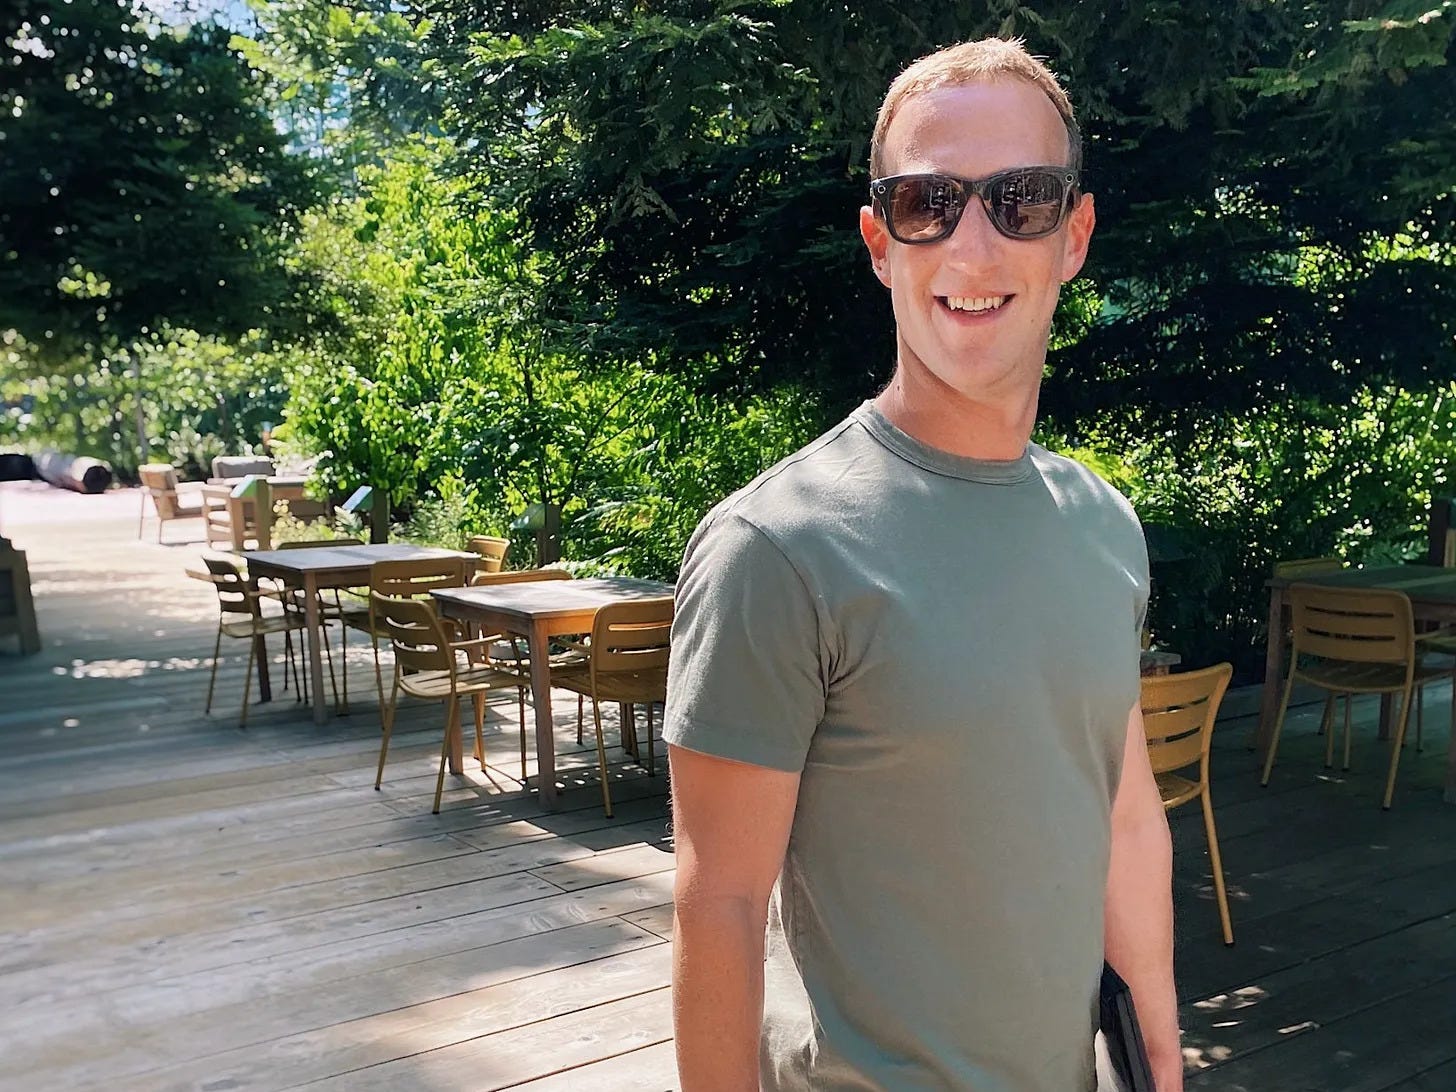 Mark Zuckerberg wearing sunglasses